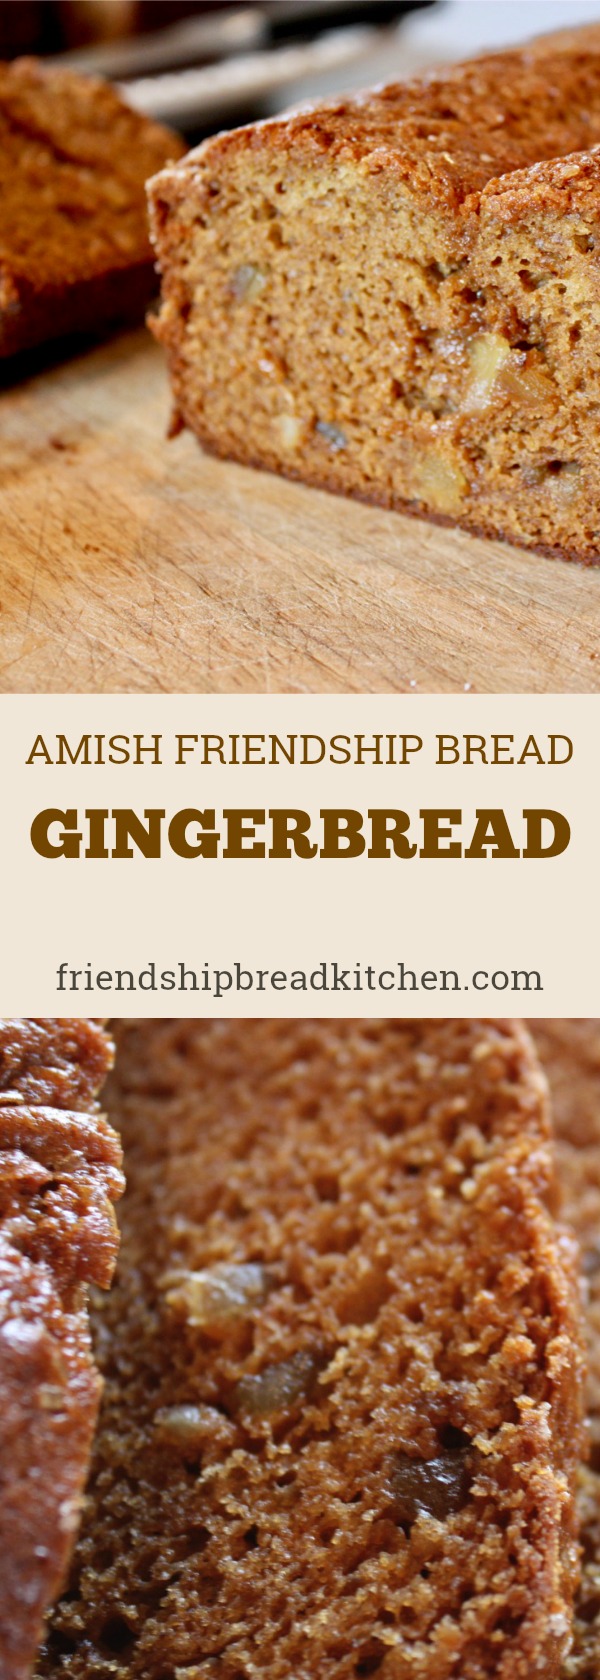 Gingerbread Amish Friendship Bread ♥ friendshipbreadkitchen.com